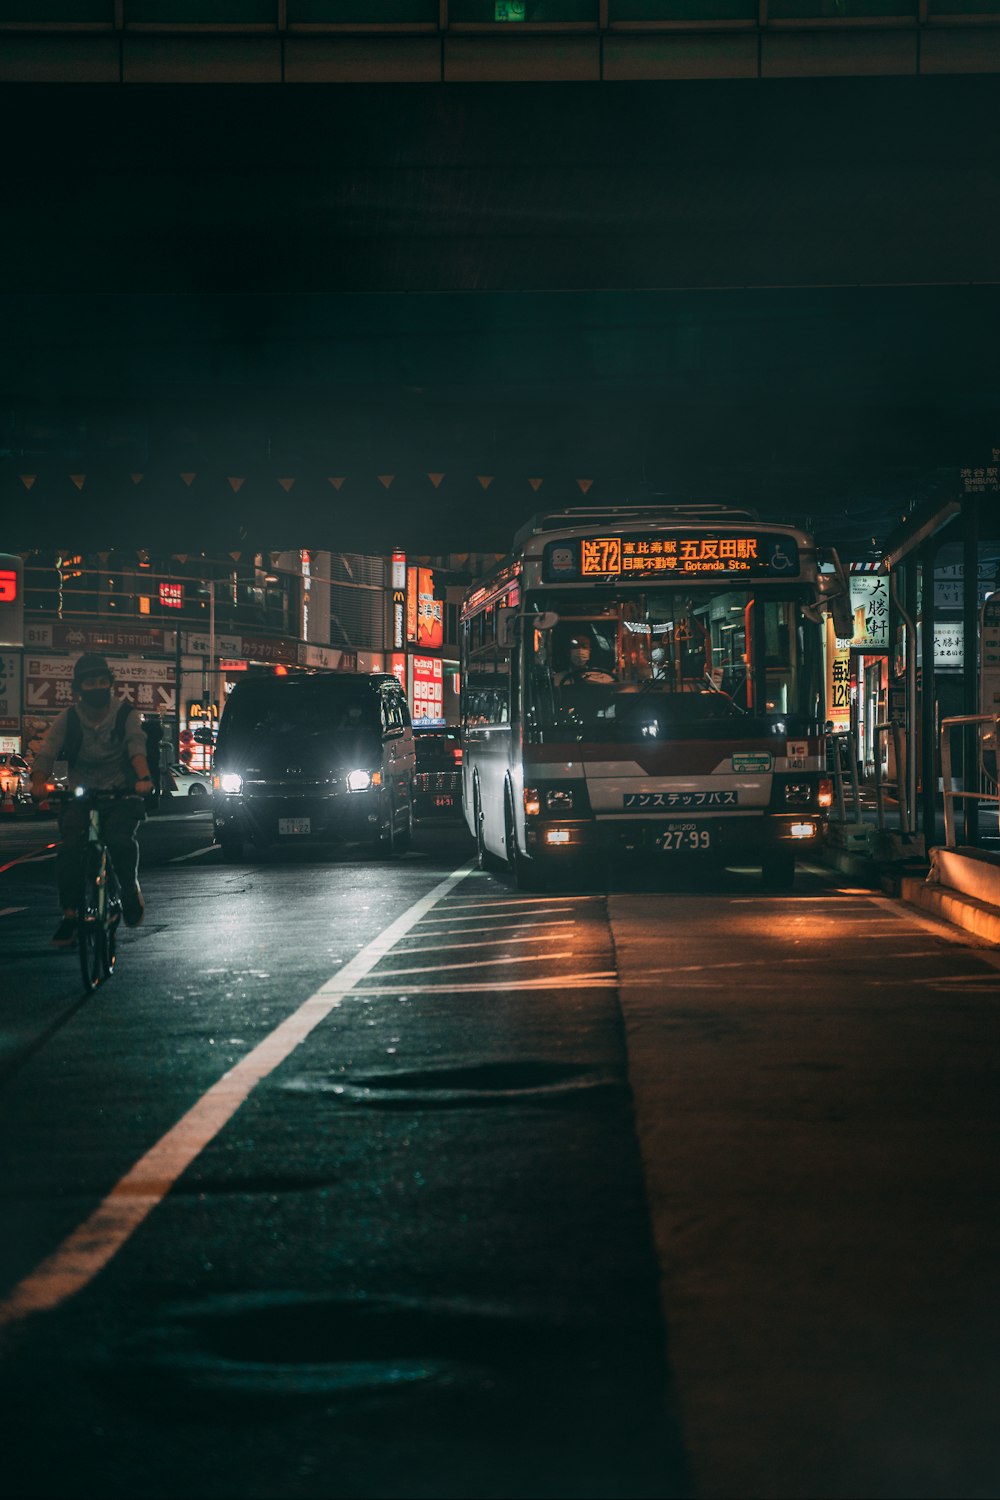 ônibus vermelho de dois andares na estrada durante a noite